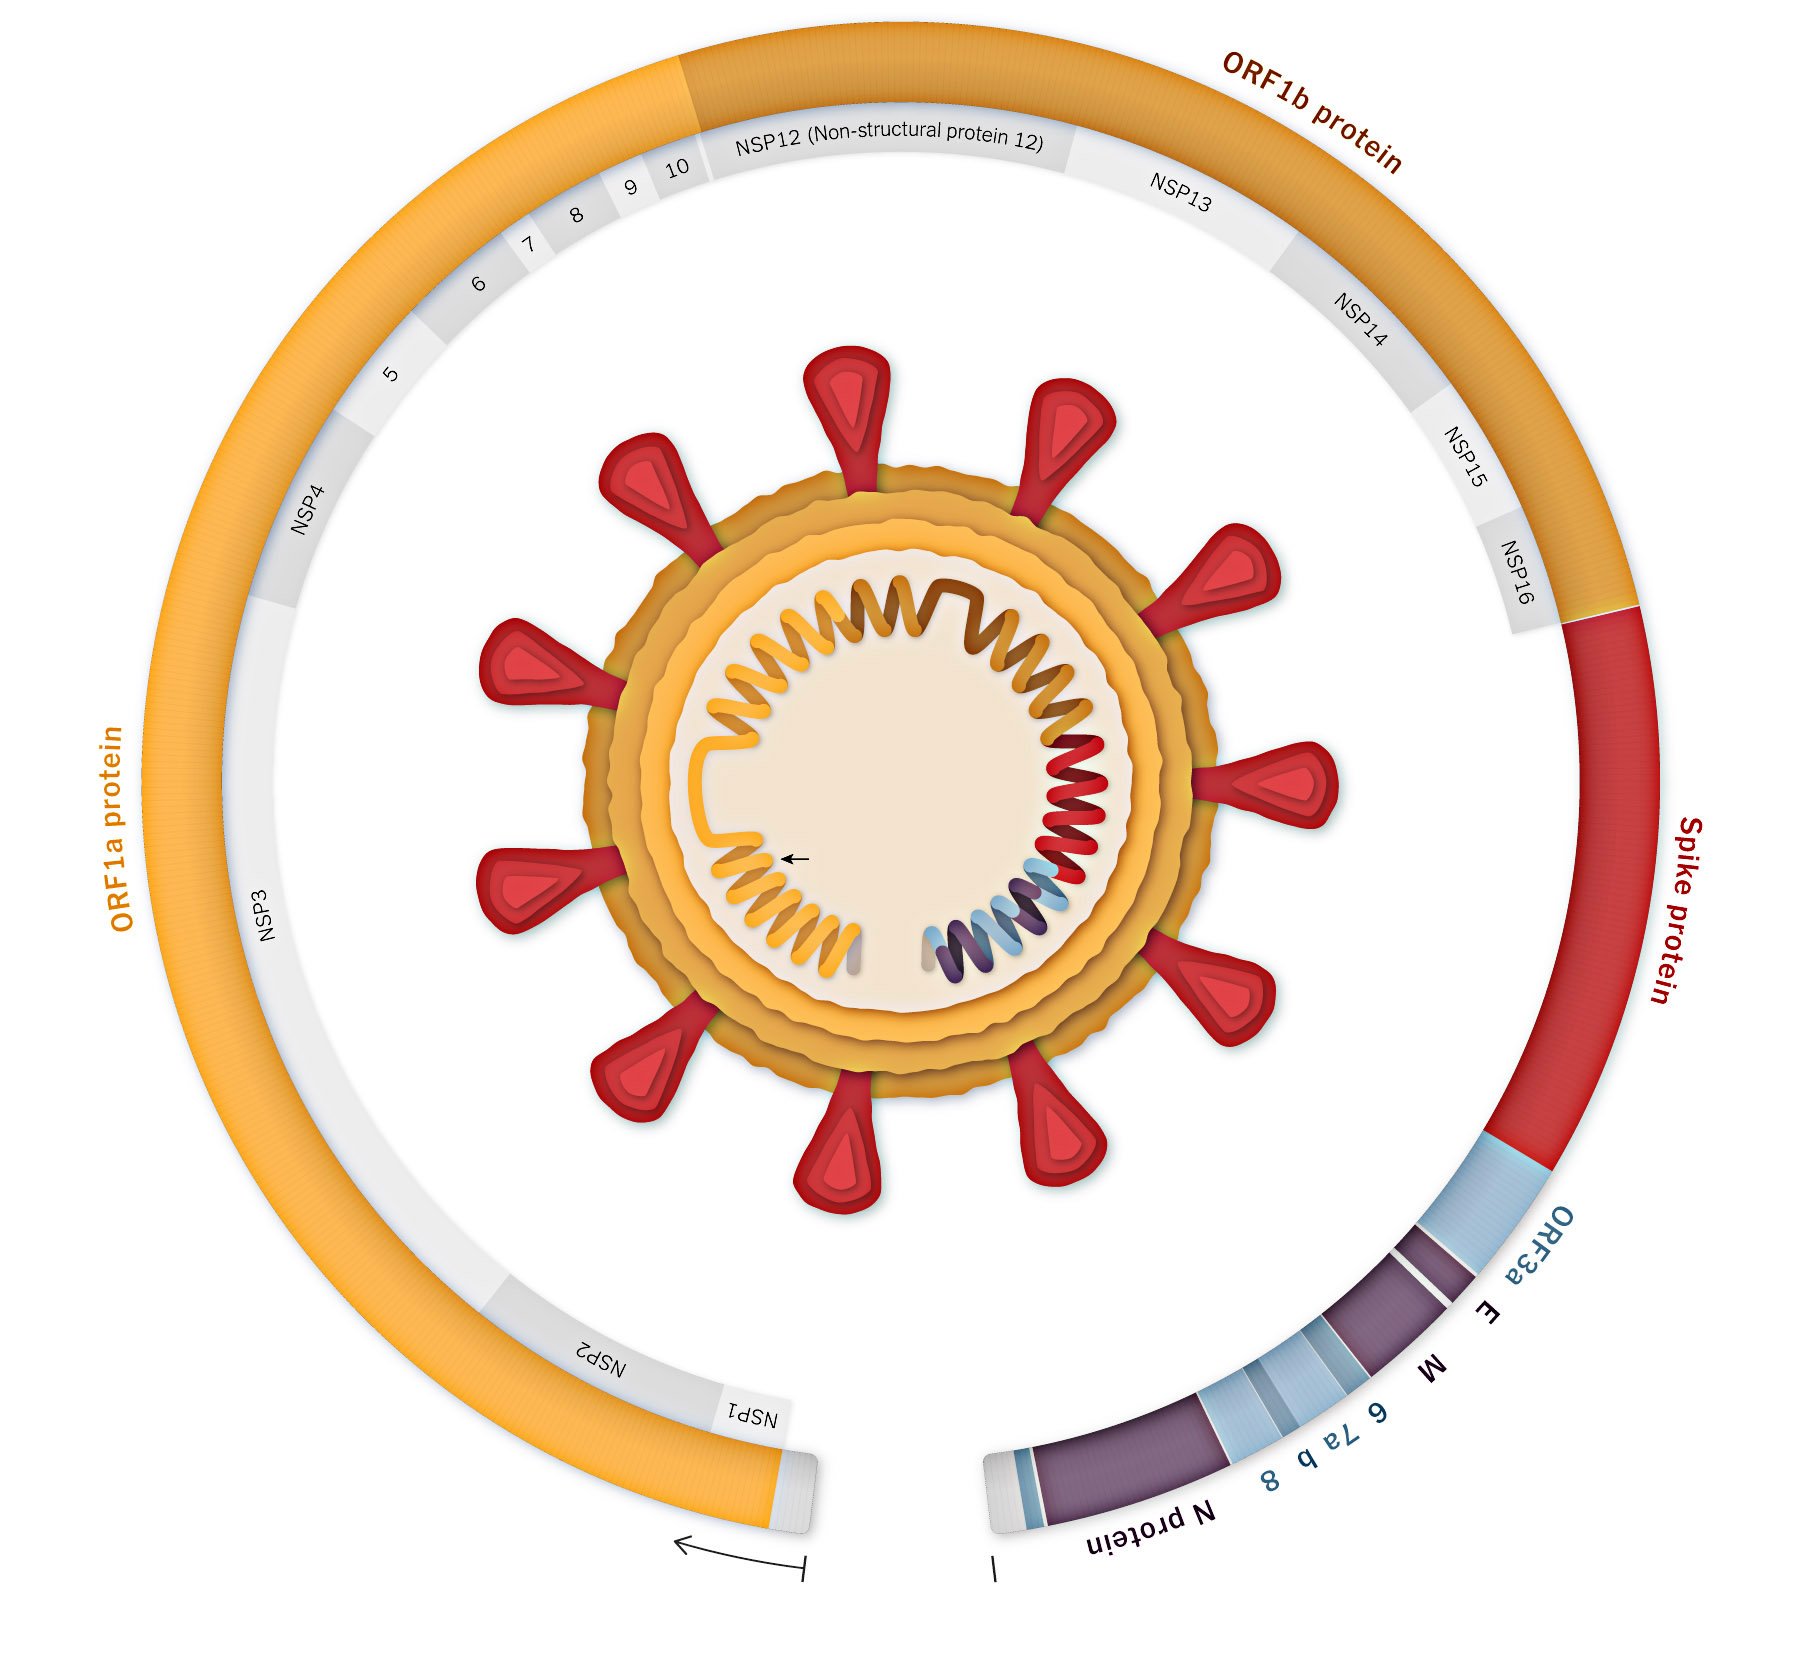 Diagrama do genoma do coronavírus com a variante B.1.1.7 dentro (Fonte: The New Yoirk Times/Reprodução)